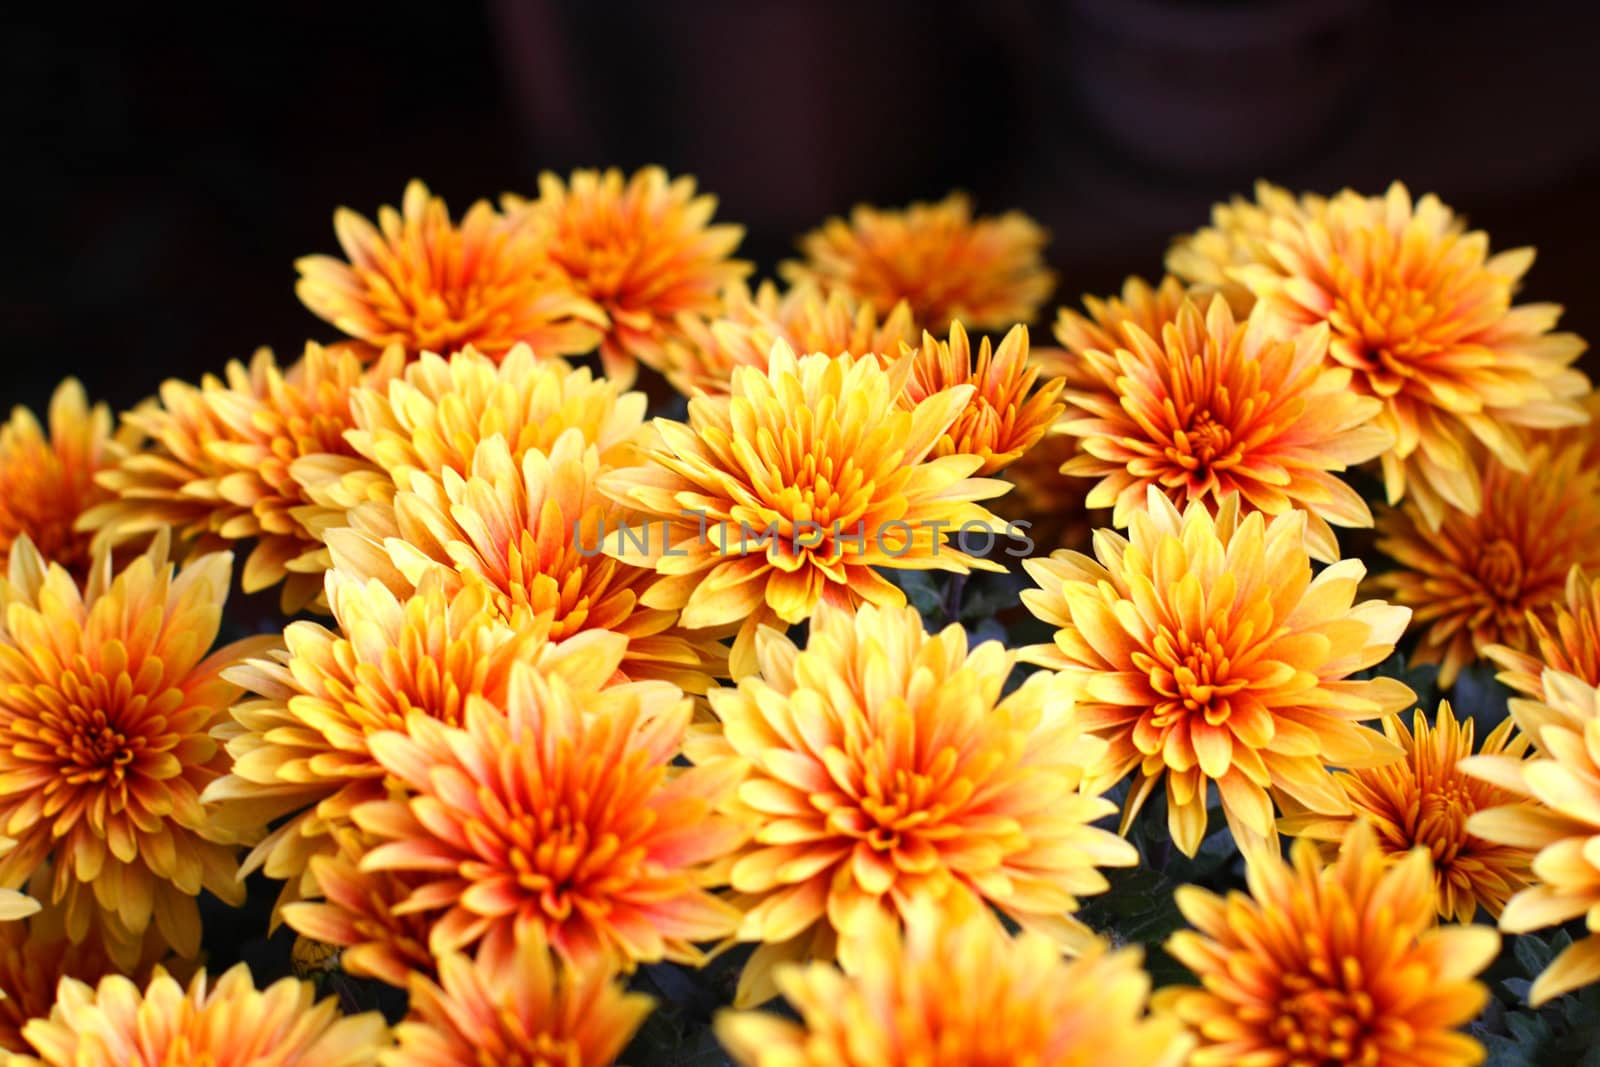 Bright chrysanthemum by Lessadar